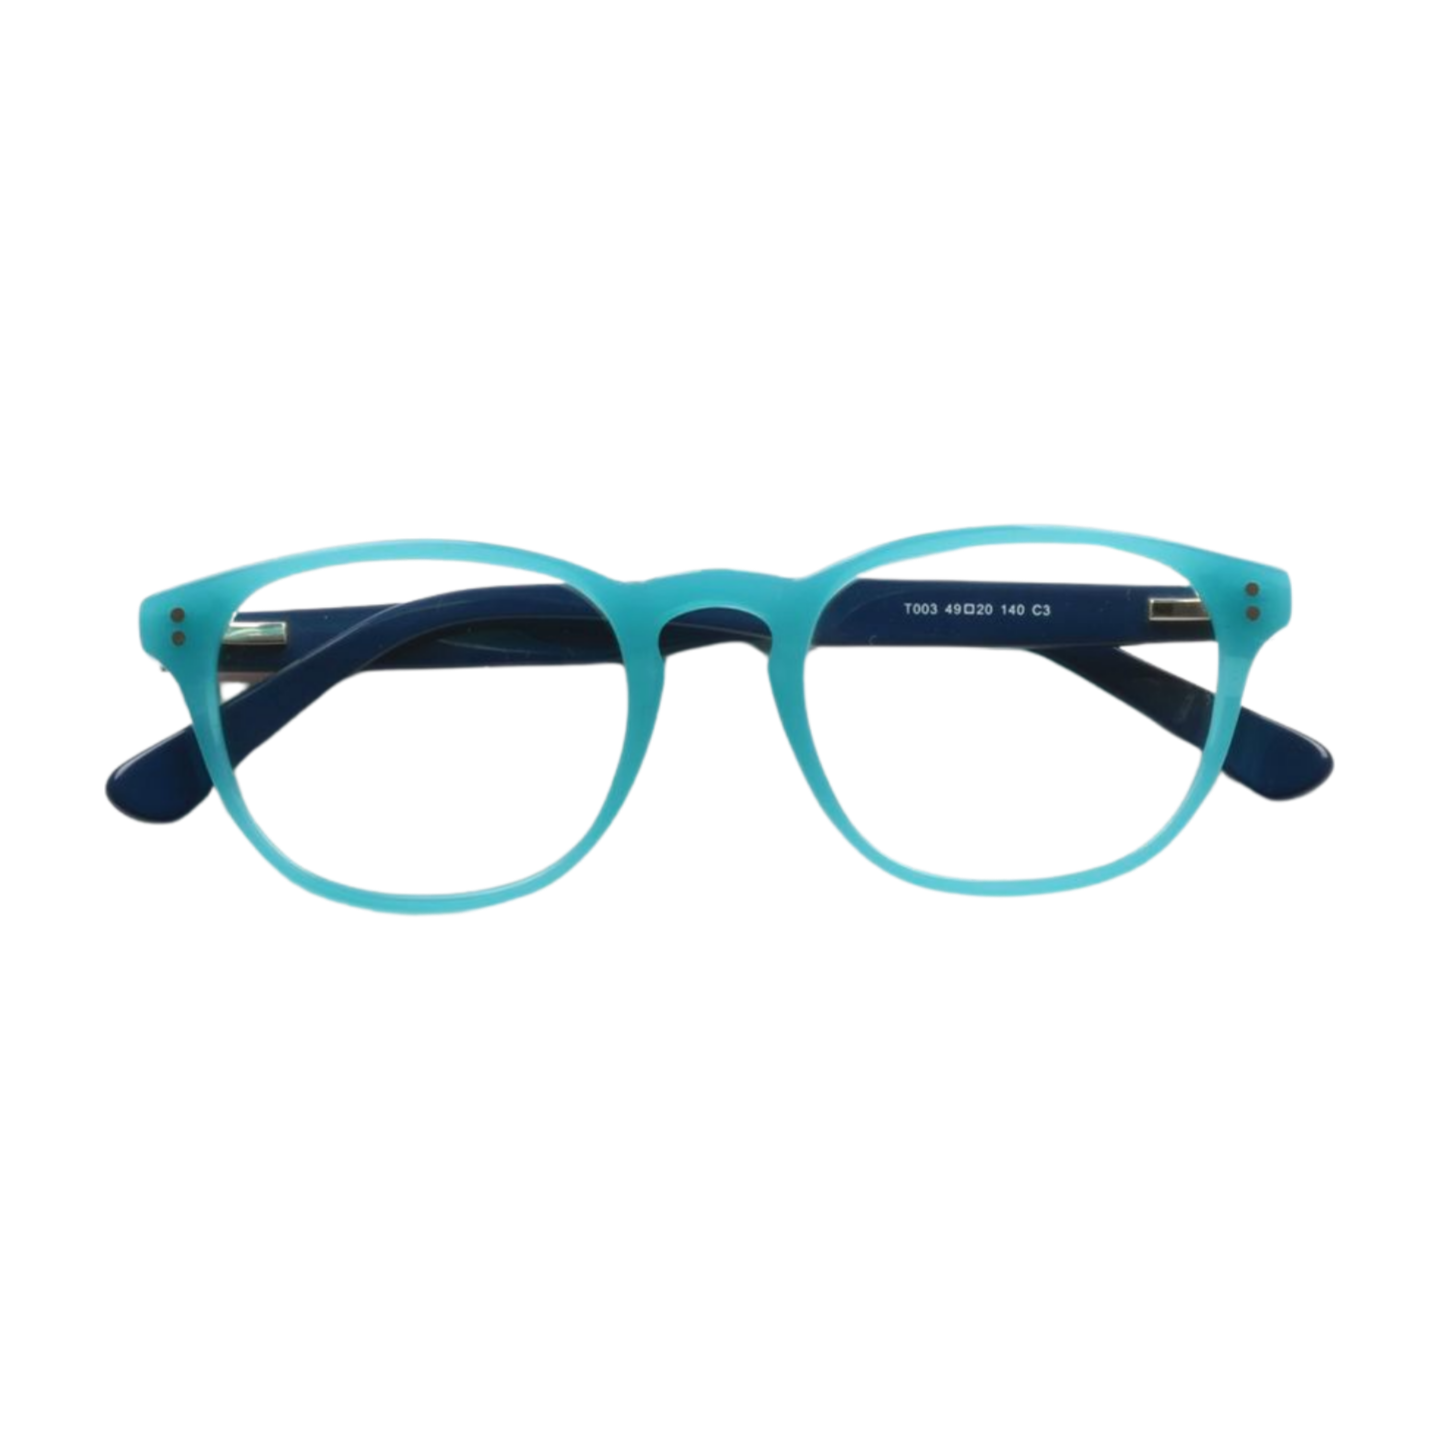 Full Rim Round Unisex Eyeglasses, Aspen Eyeglasses Aqua Color Font View from VivGlasses